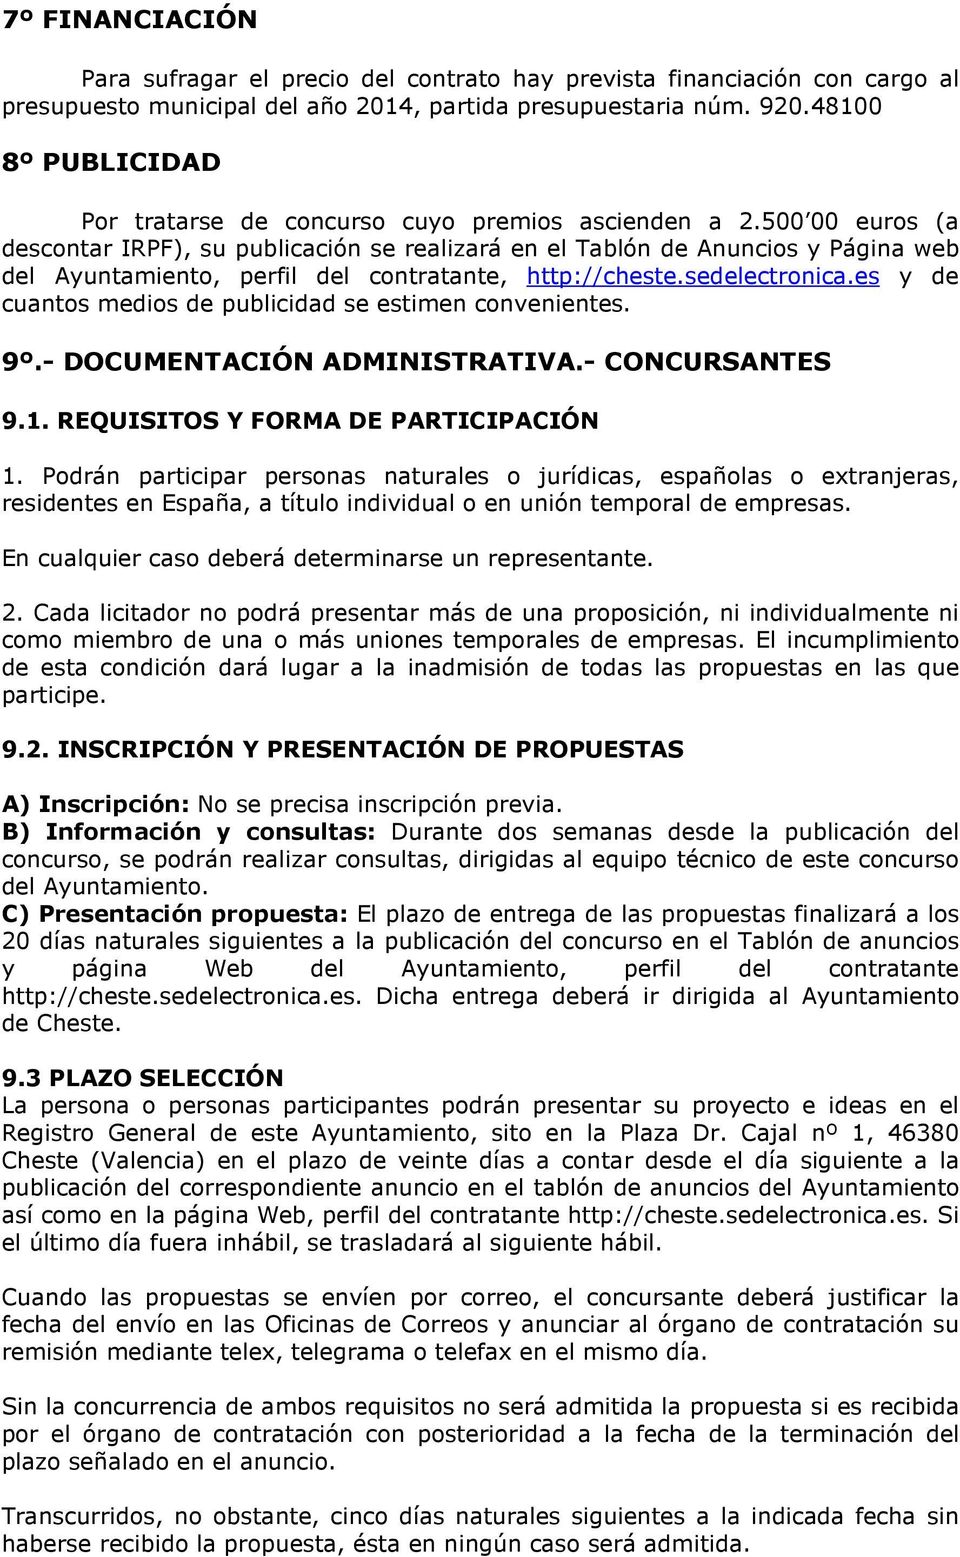 500 00 euros (a descontar IRPF), su publicación se realizará en el Tablón de Anuncios y Página web del Ayuntamiento, perfil del contratante, http://cheste.sedelectronica.